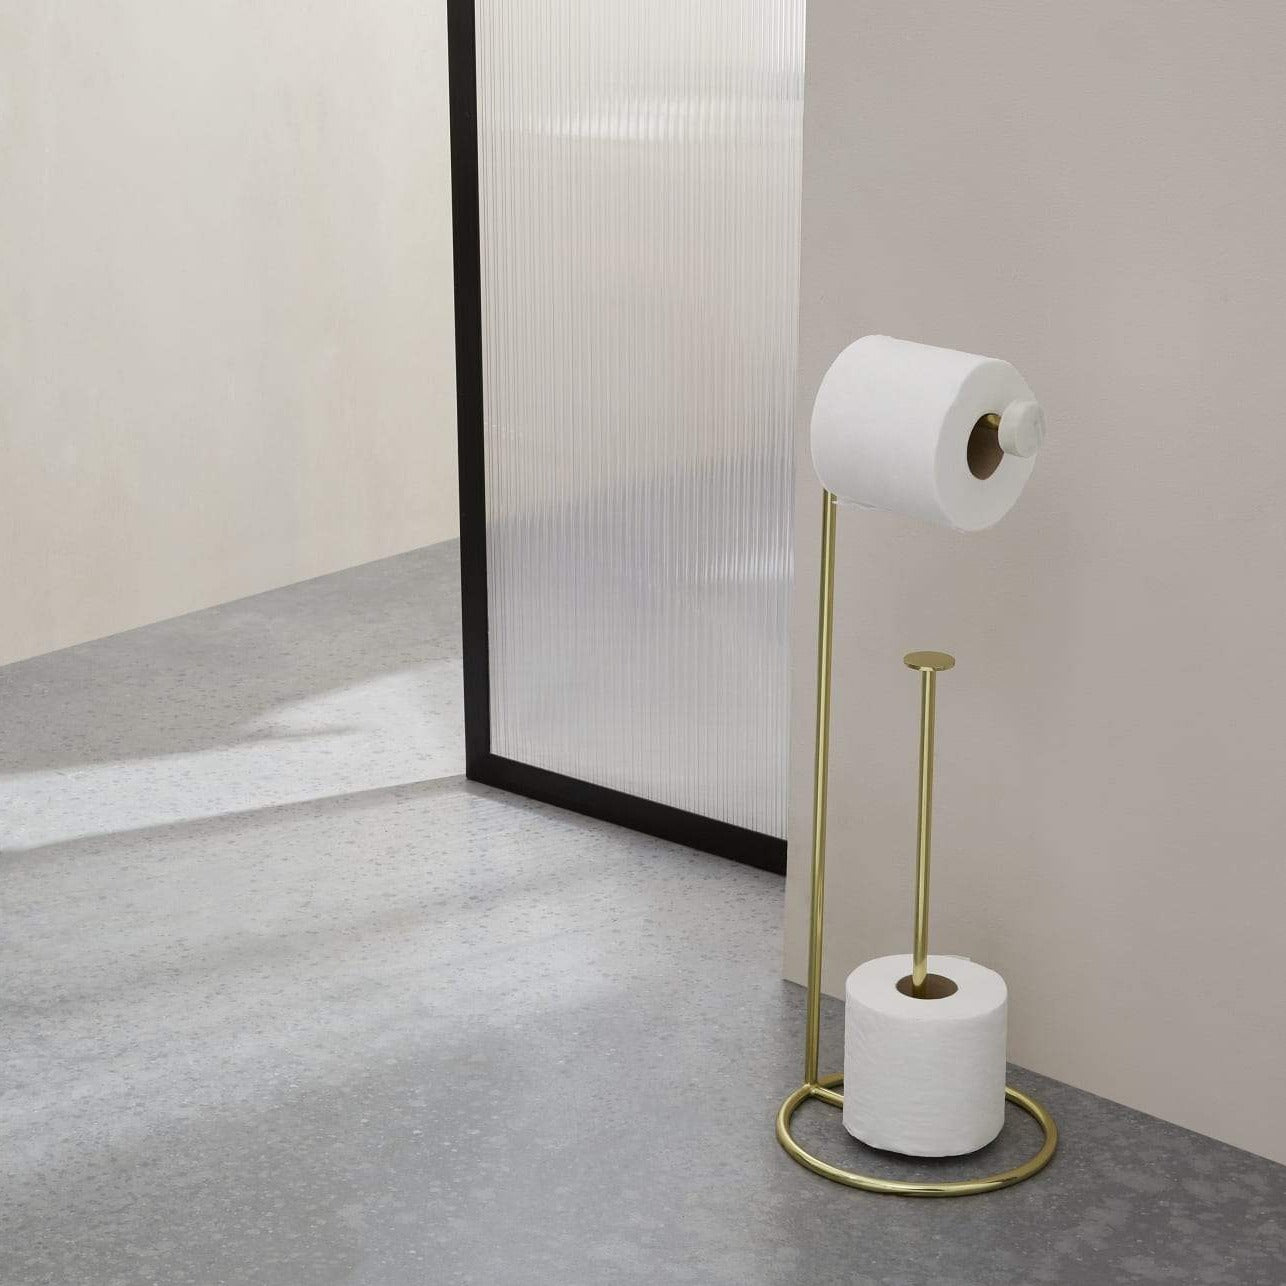 Porte papier-toilette sur pieds – Deco EXPRESS